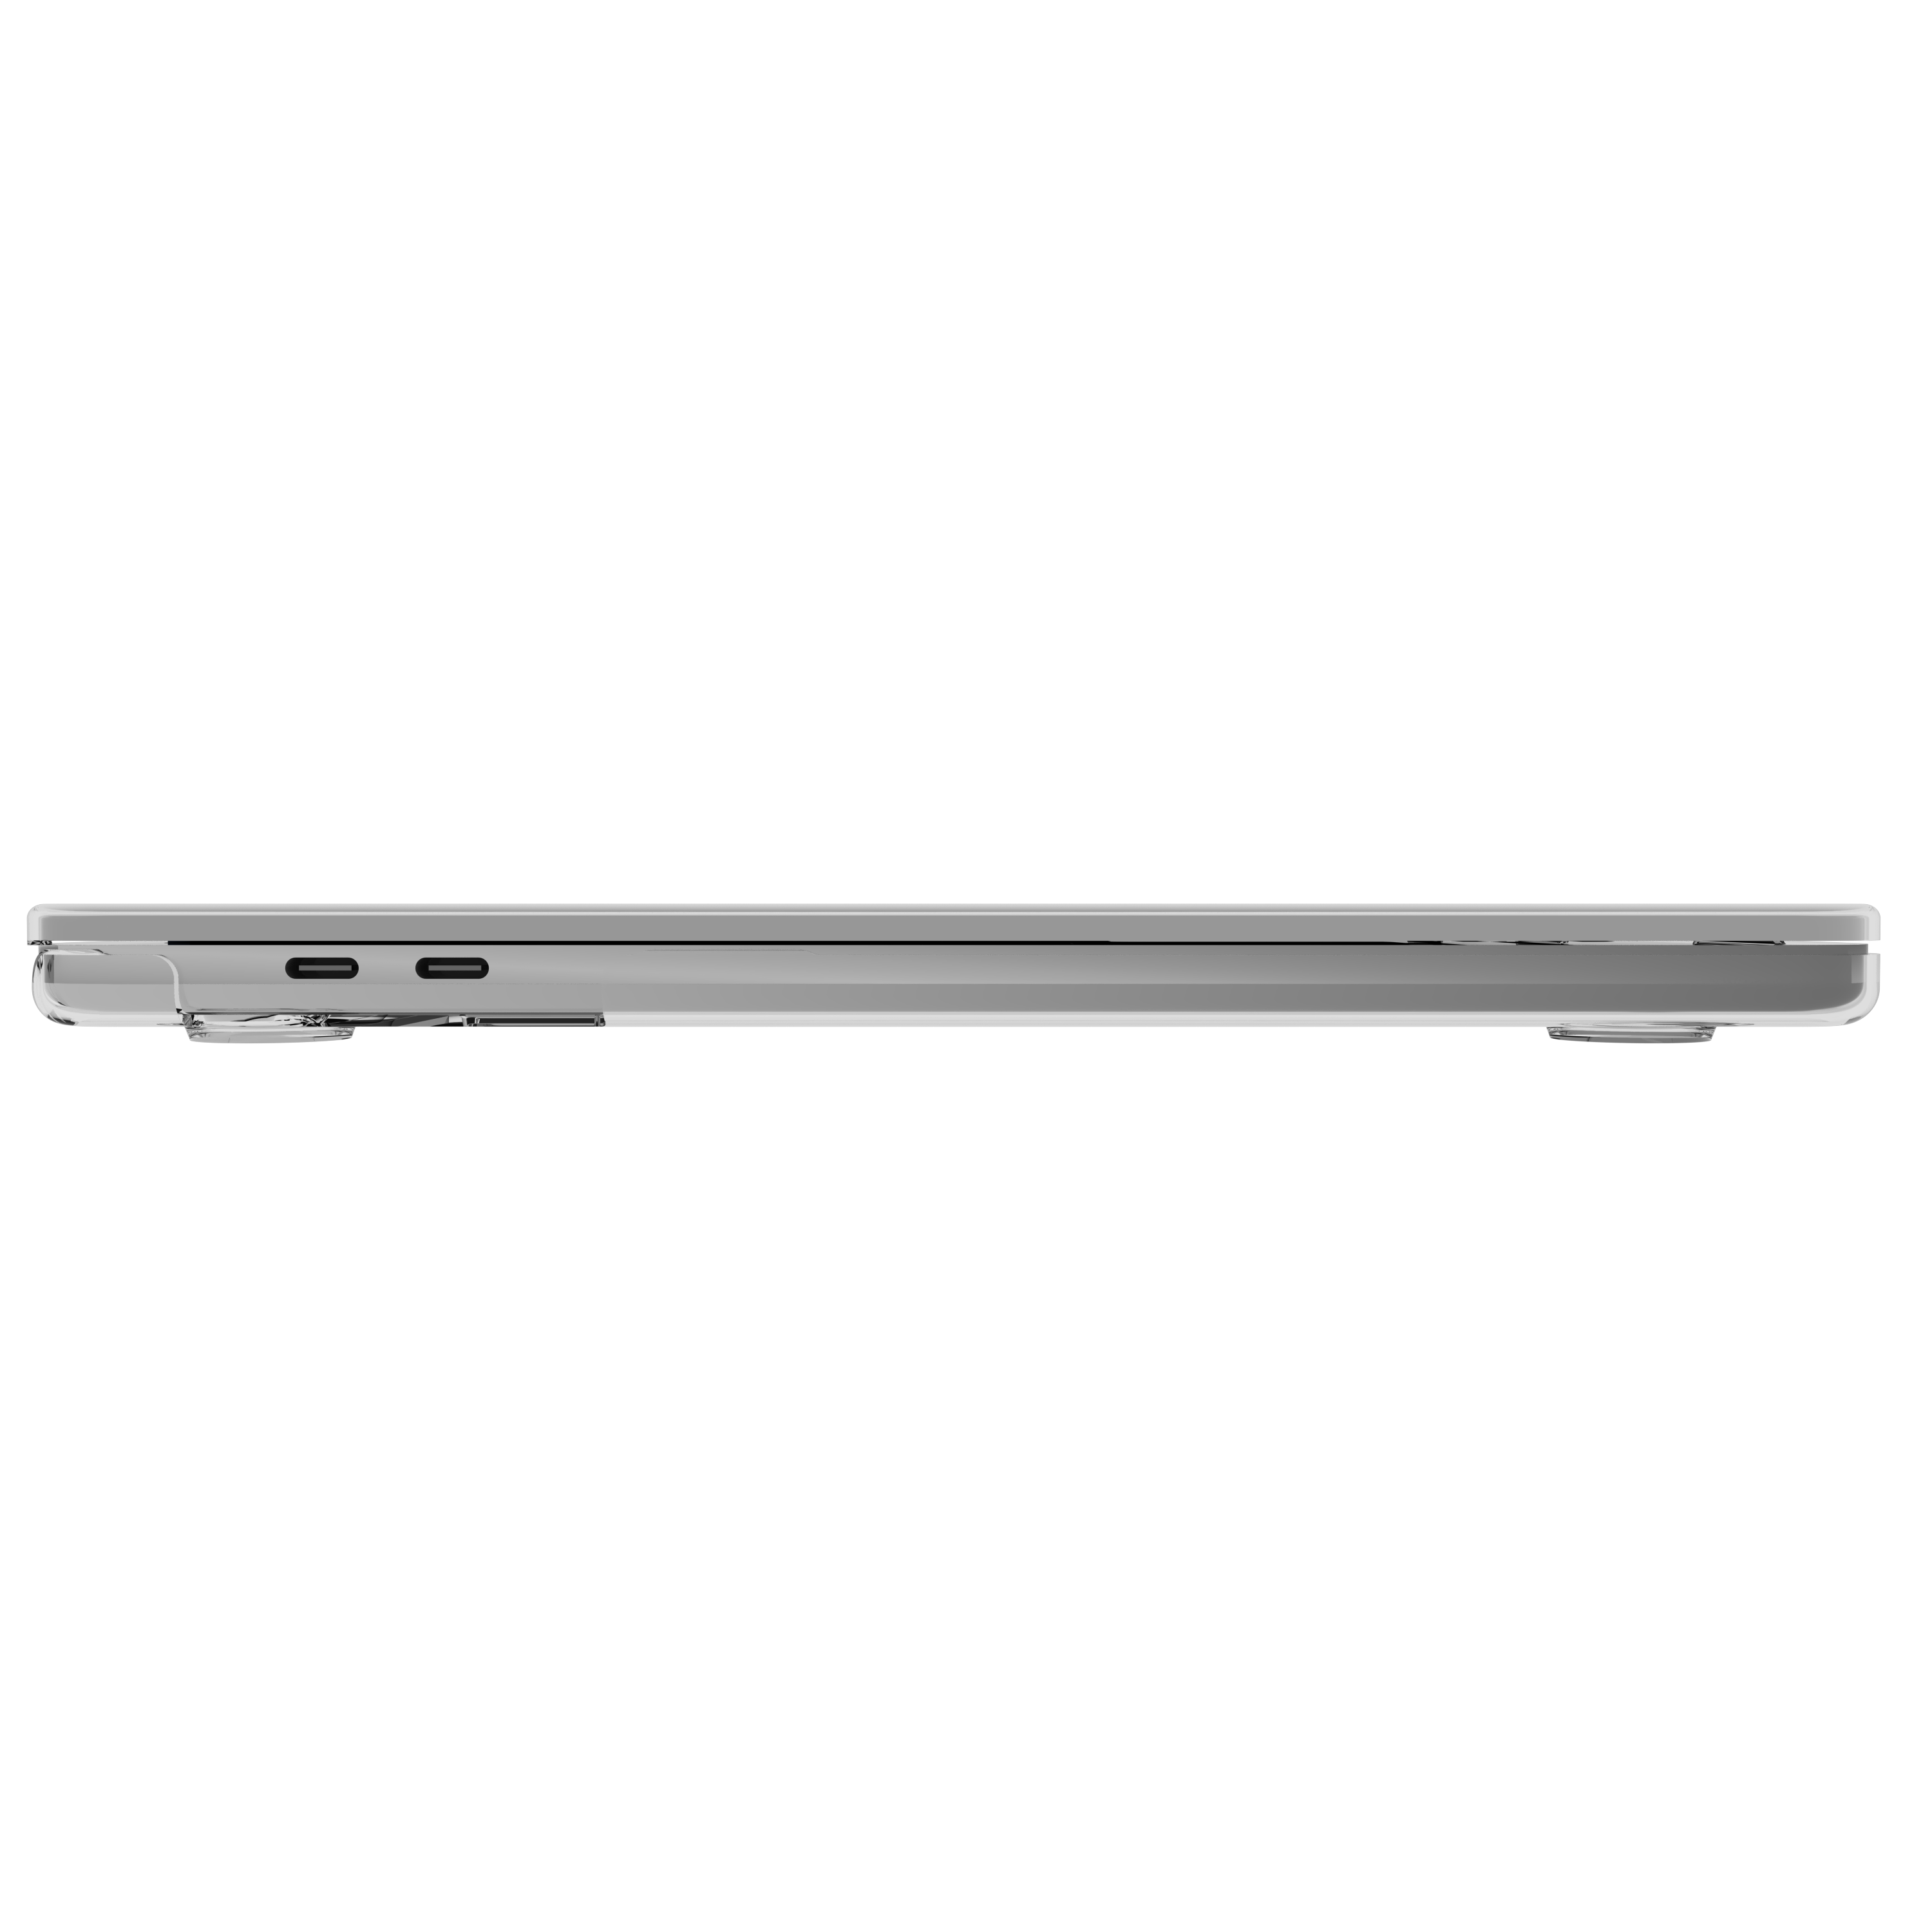 CASE-MATE Snap-On Laptophülle Kunststoff, für Transparent Apple Bumper